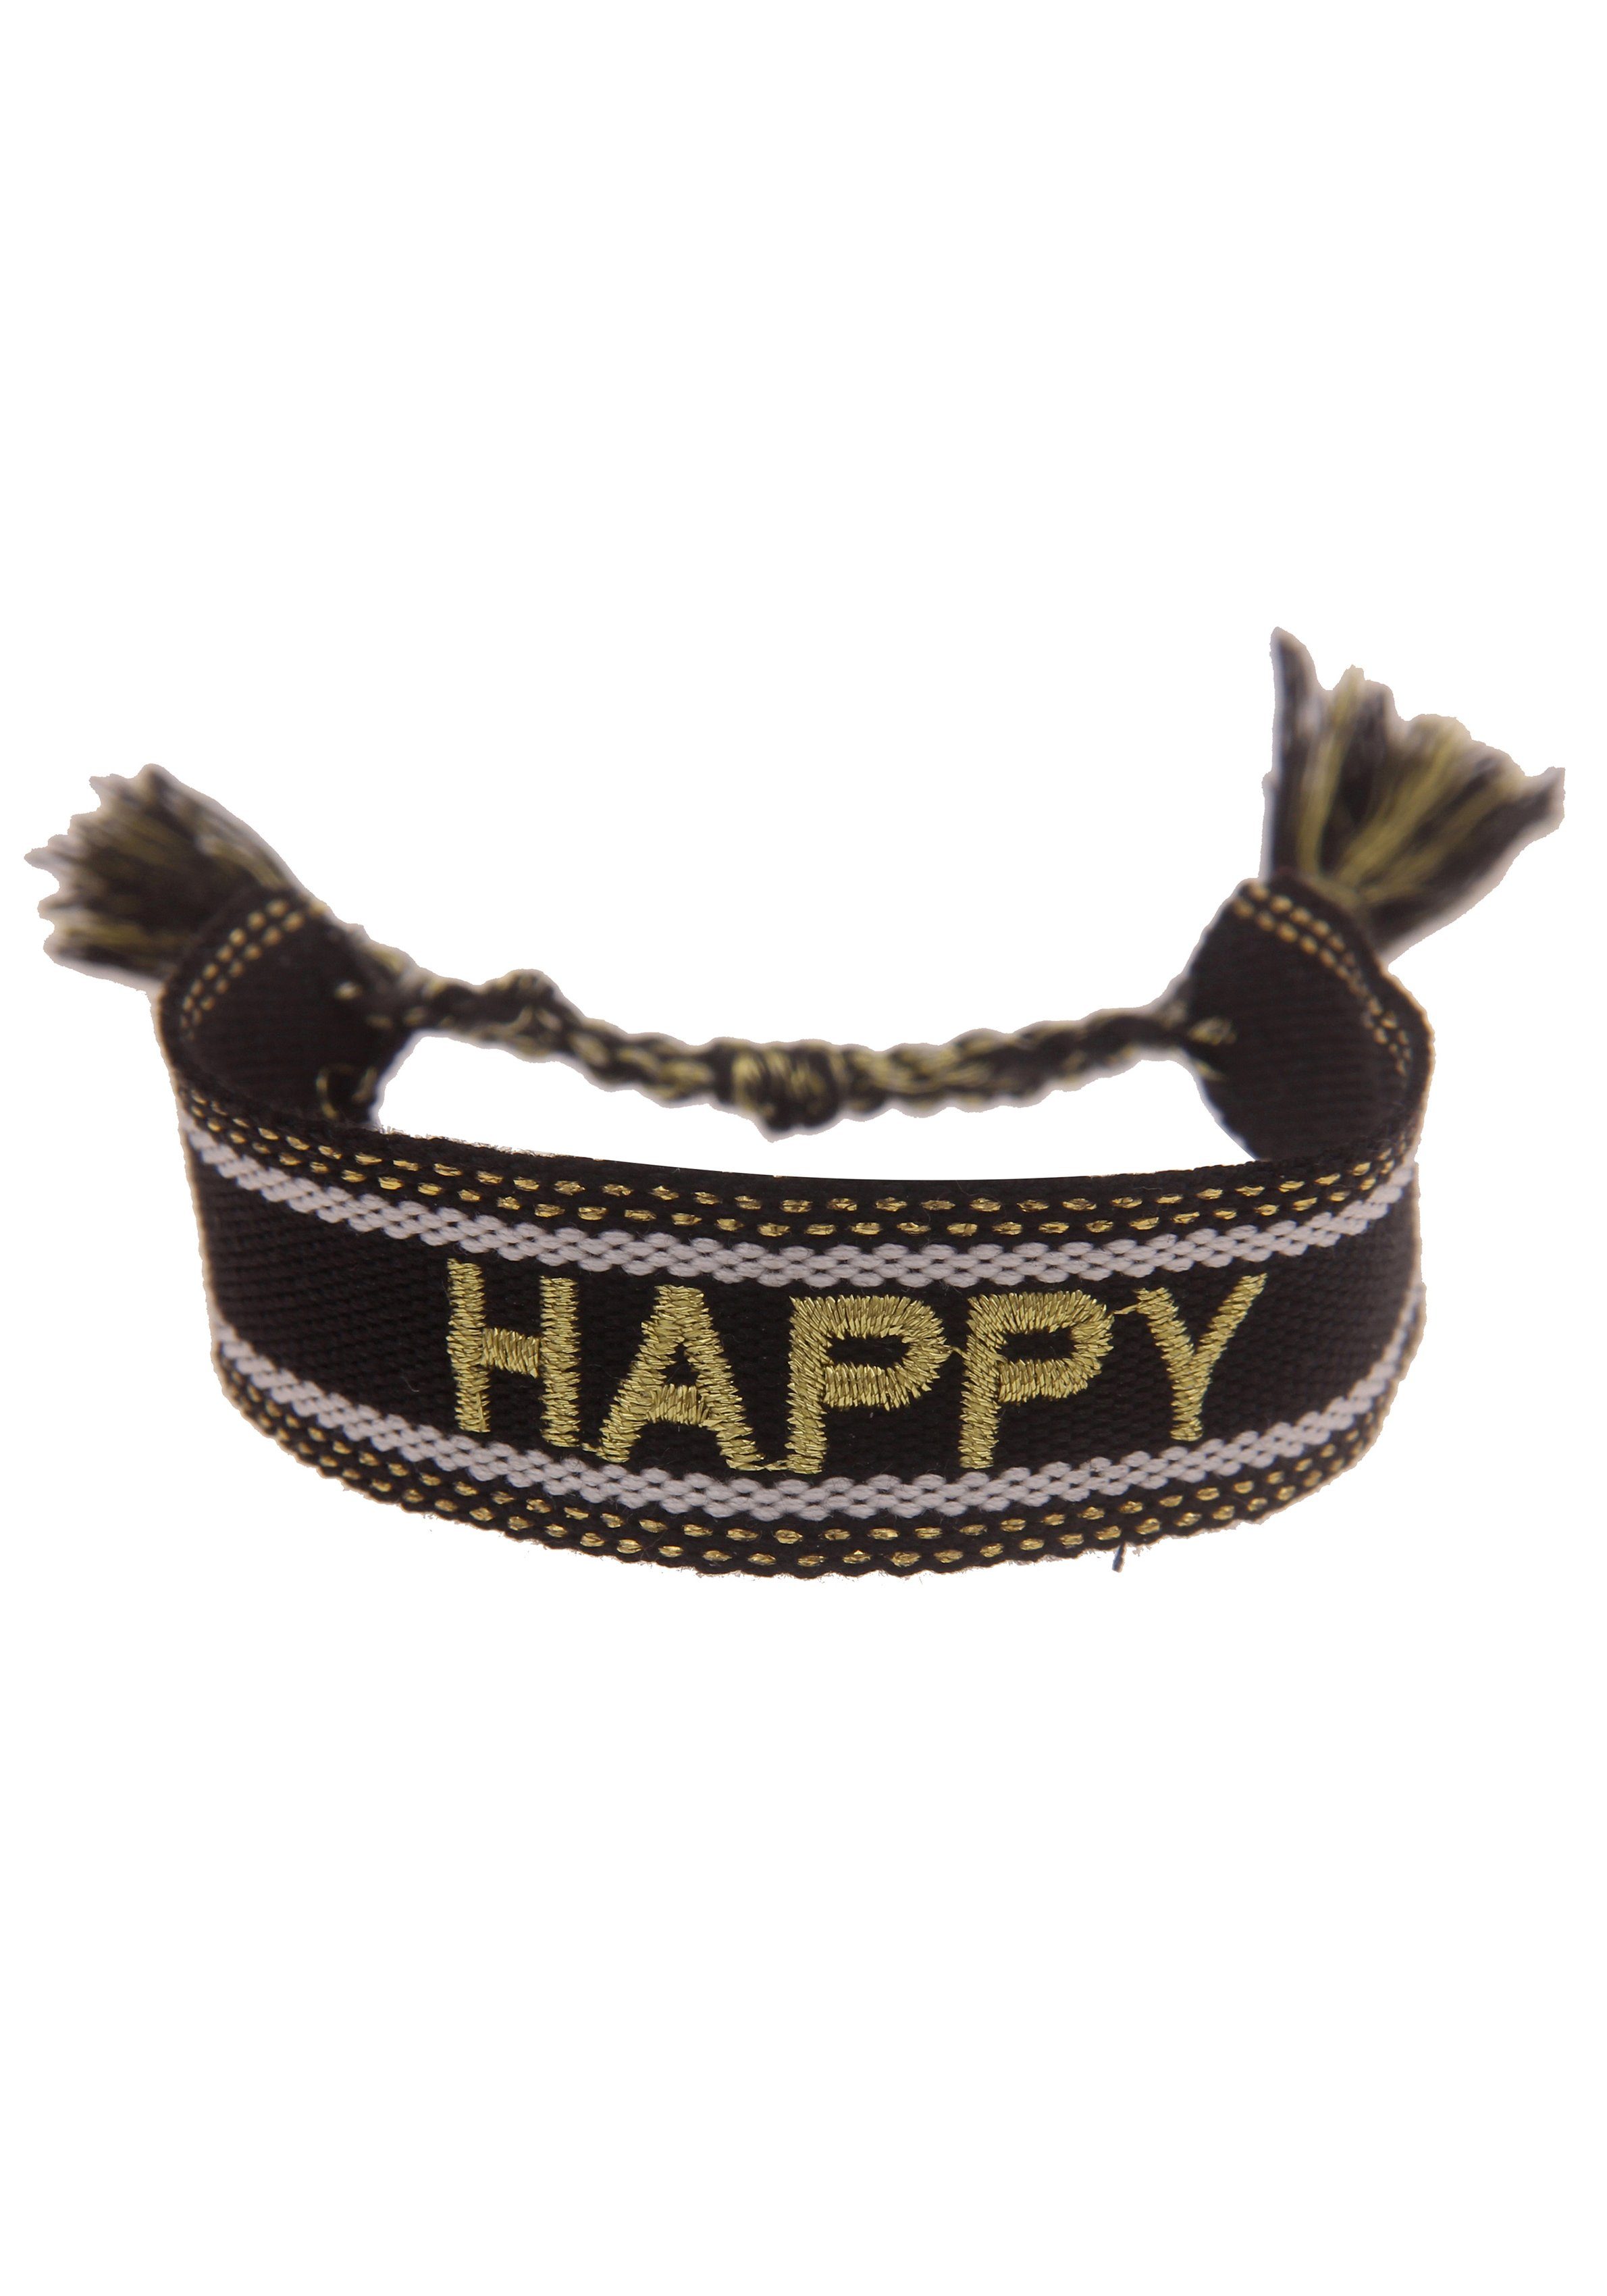 leslii armband happy, festival armband, 260120406, 260120411 zwart